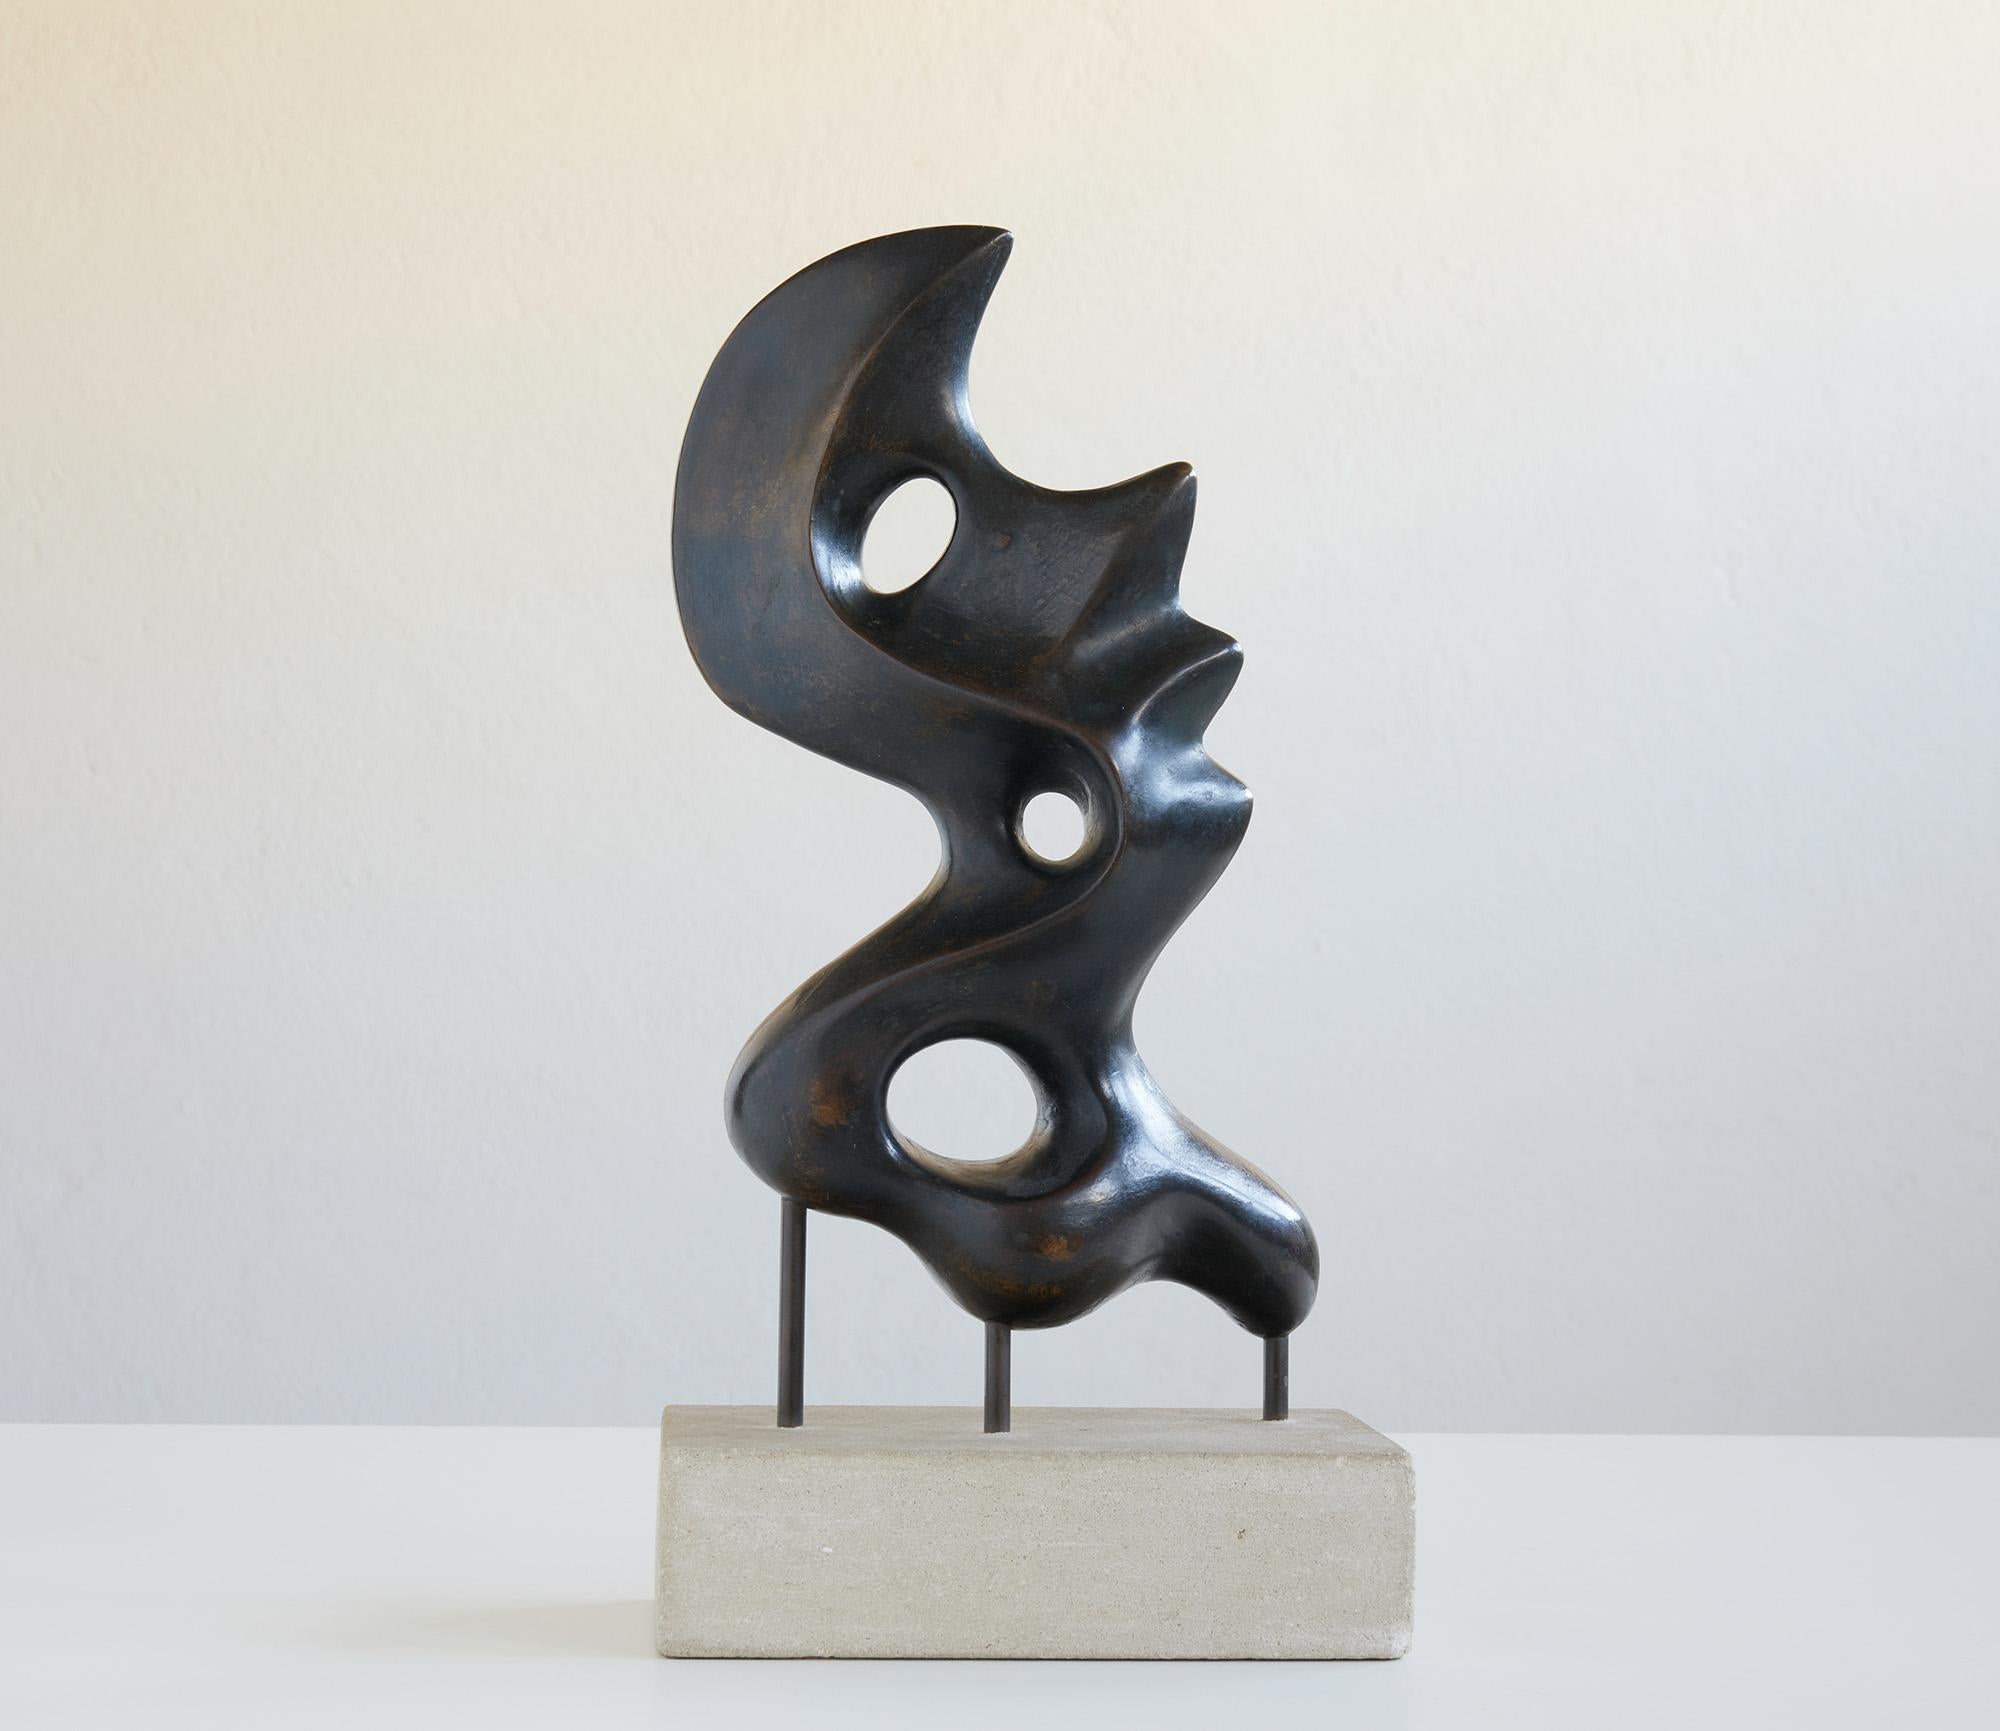 Belle sculpture abstraite en bronze dans le style de Hans Arp 1886-1967

Signé E.Stöcklin et daté 64.

